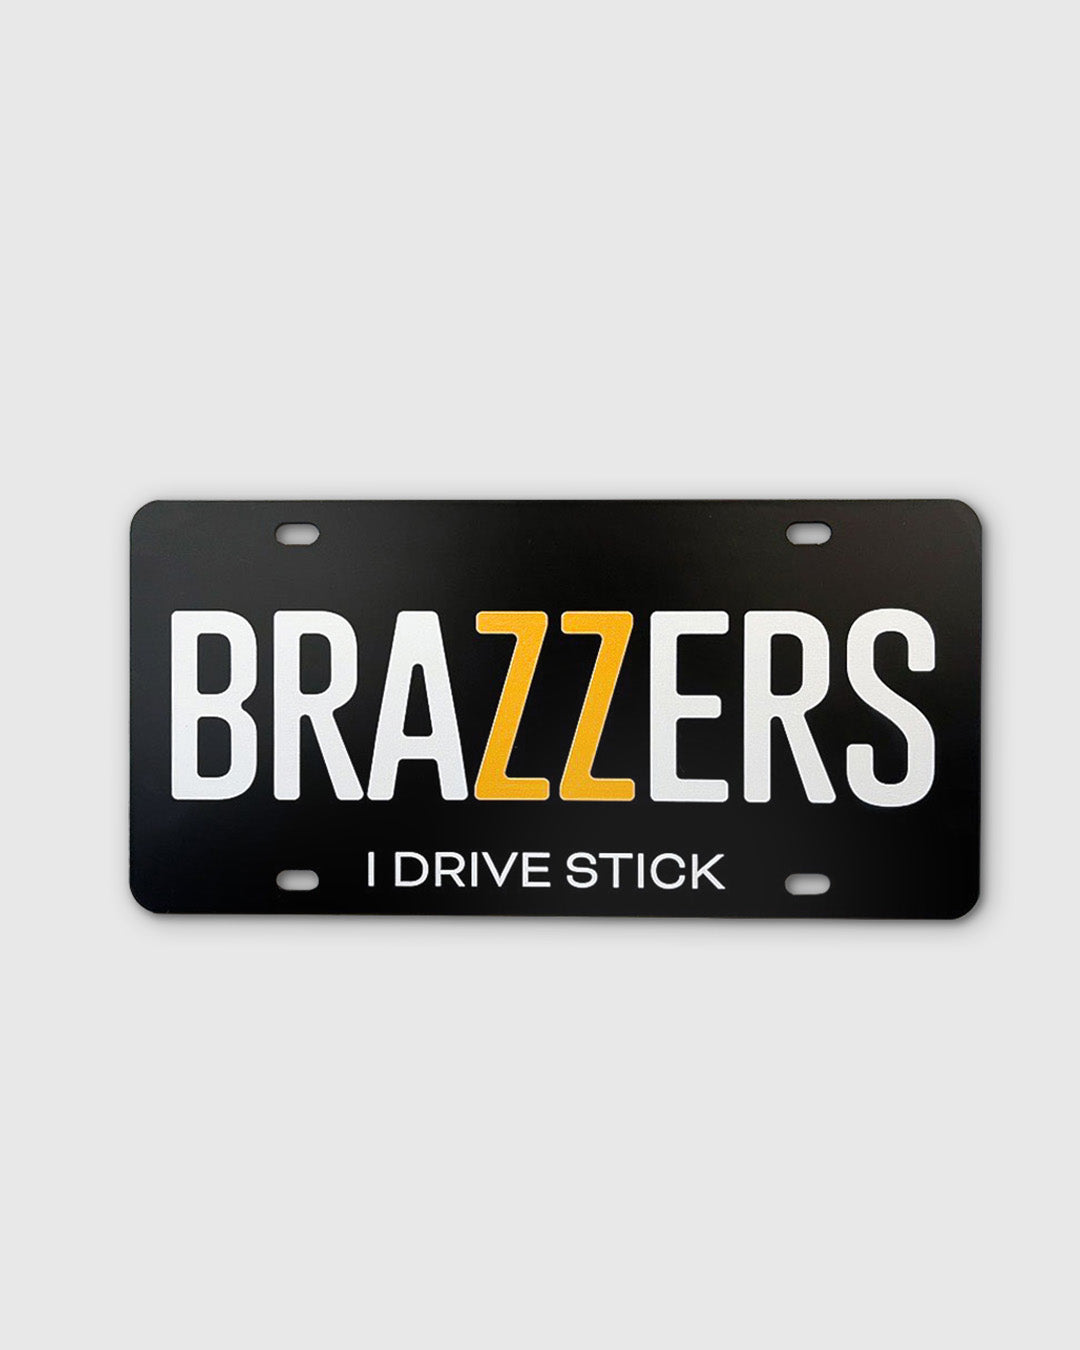 brazzers-license-plate_i-drive-stick